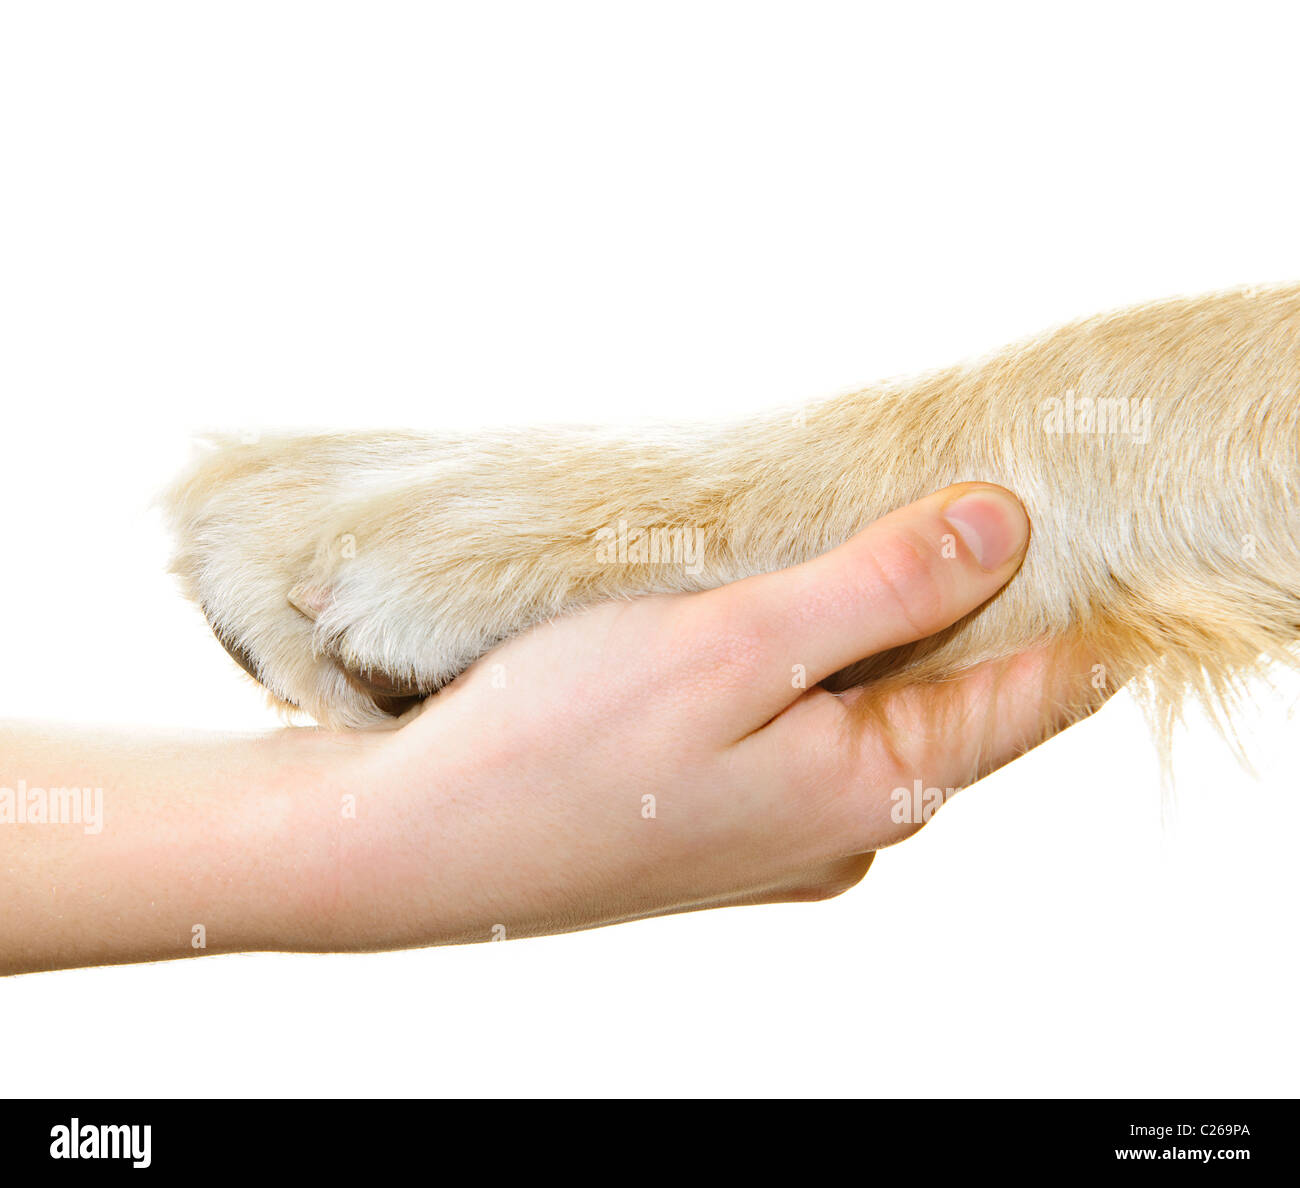 Human hand holding dog paw isolated on white background Stock Photo